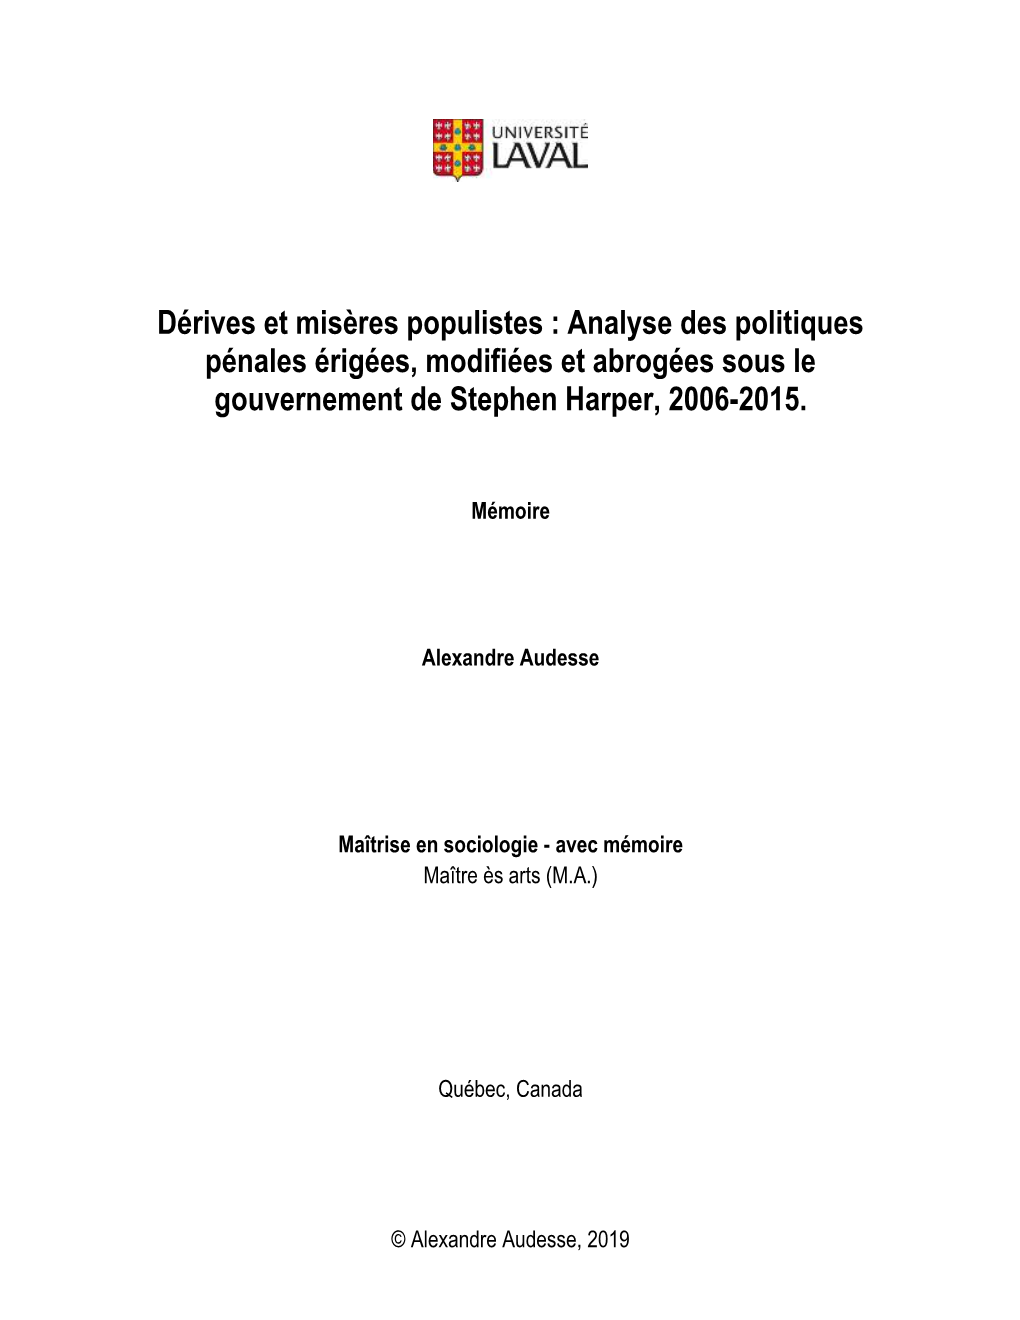 Dérives Et Misères Populistes : Analyse Des Politiques Pénales Érigées, Modifiées Et Abrogées Sous Le Gouvernement De Stephen Harper, 2006-2015